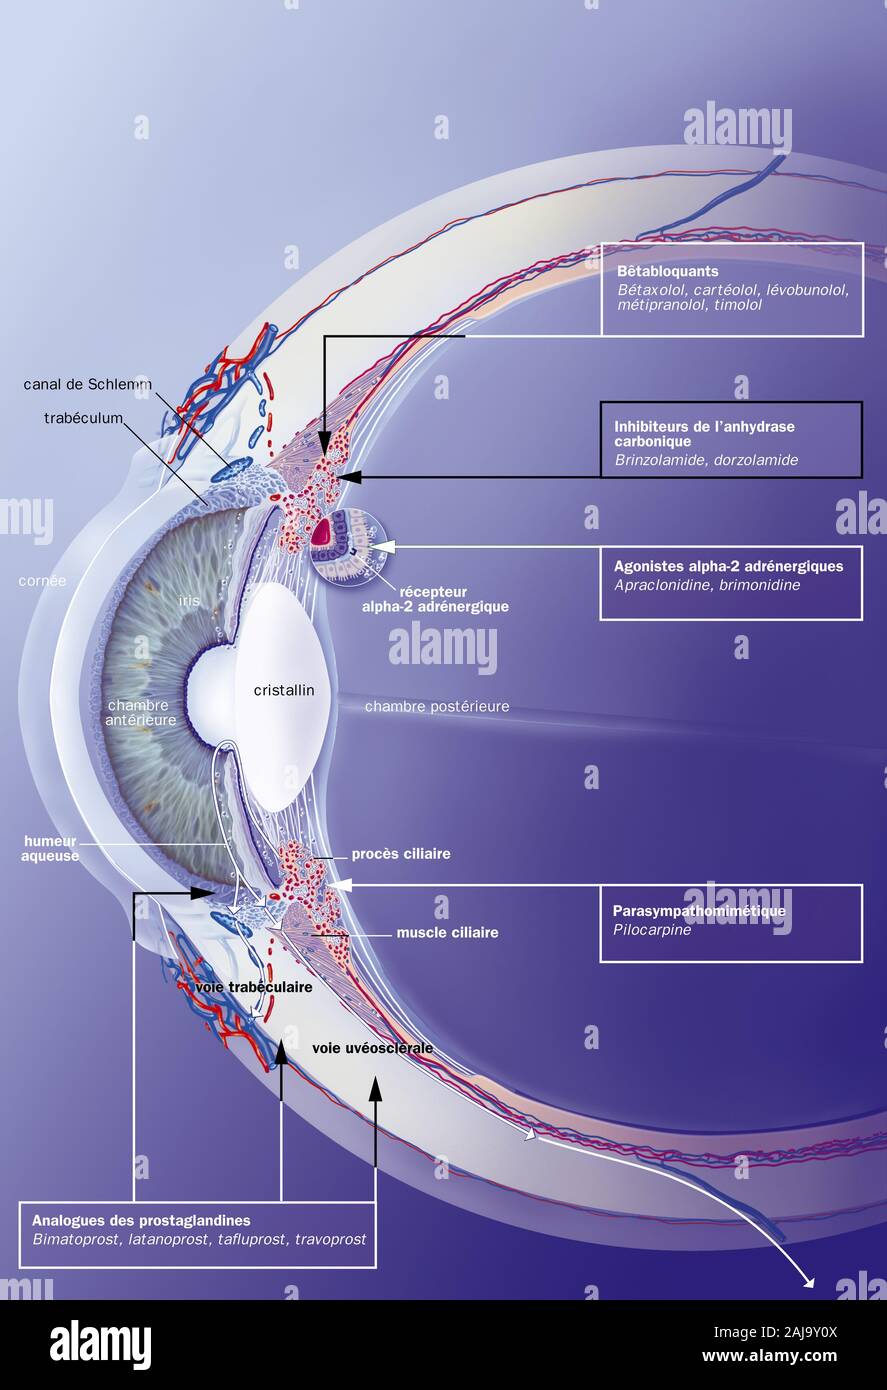 Canale di Schlemm, trabeculum, umor acqueo, trattamenti. Sezione sagittale dell'occhio con, dietro la cornea, la camera anteriore, l'iride e la crys Foto Stock